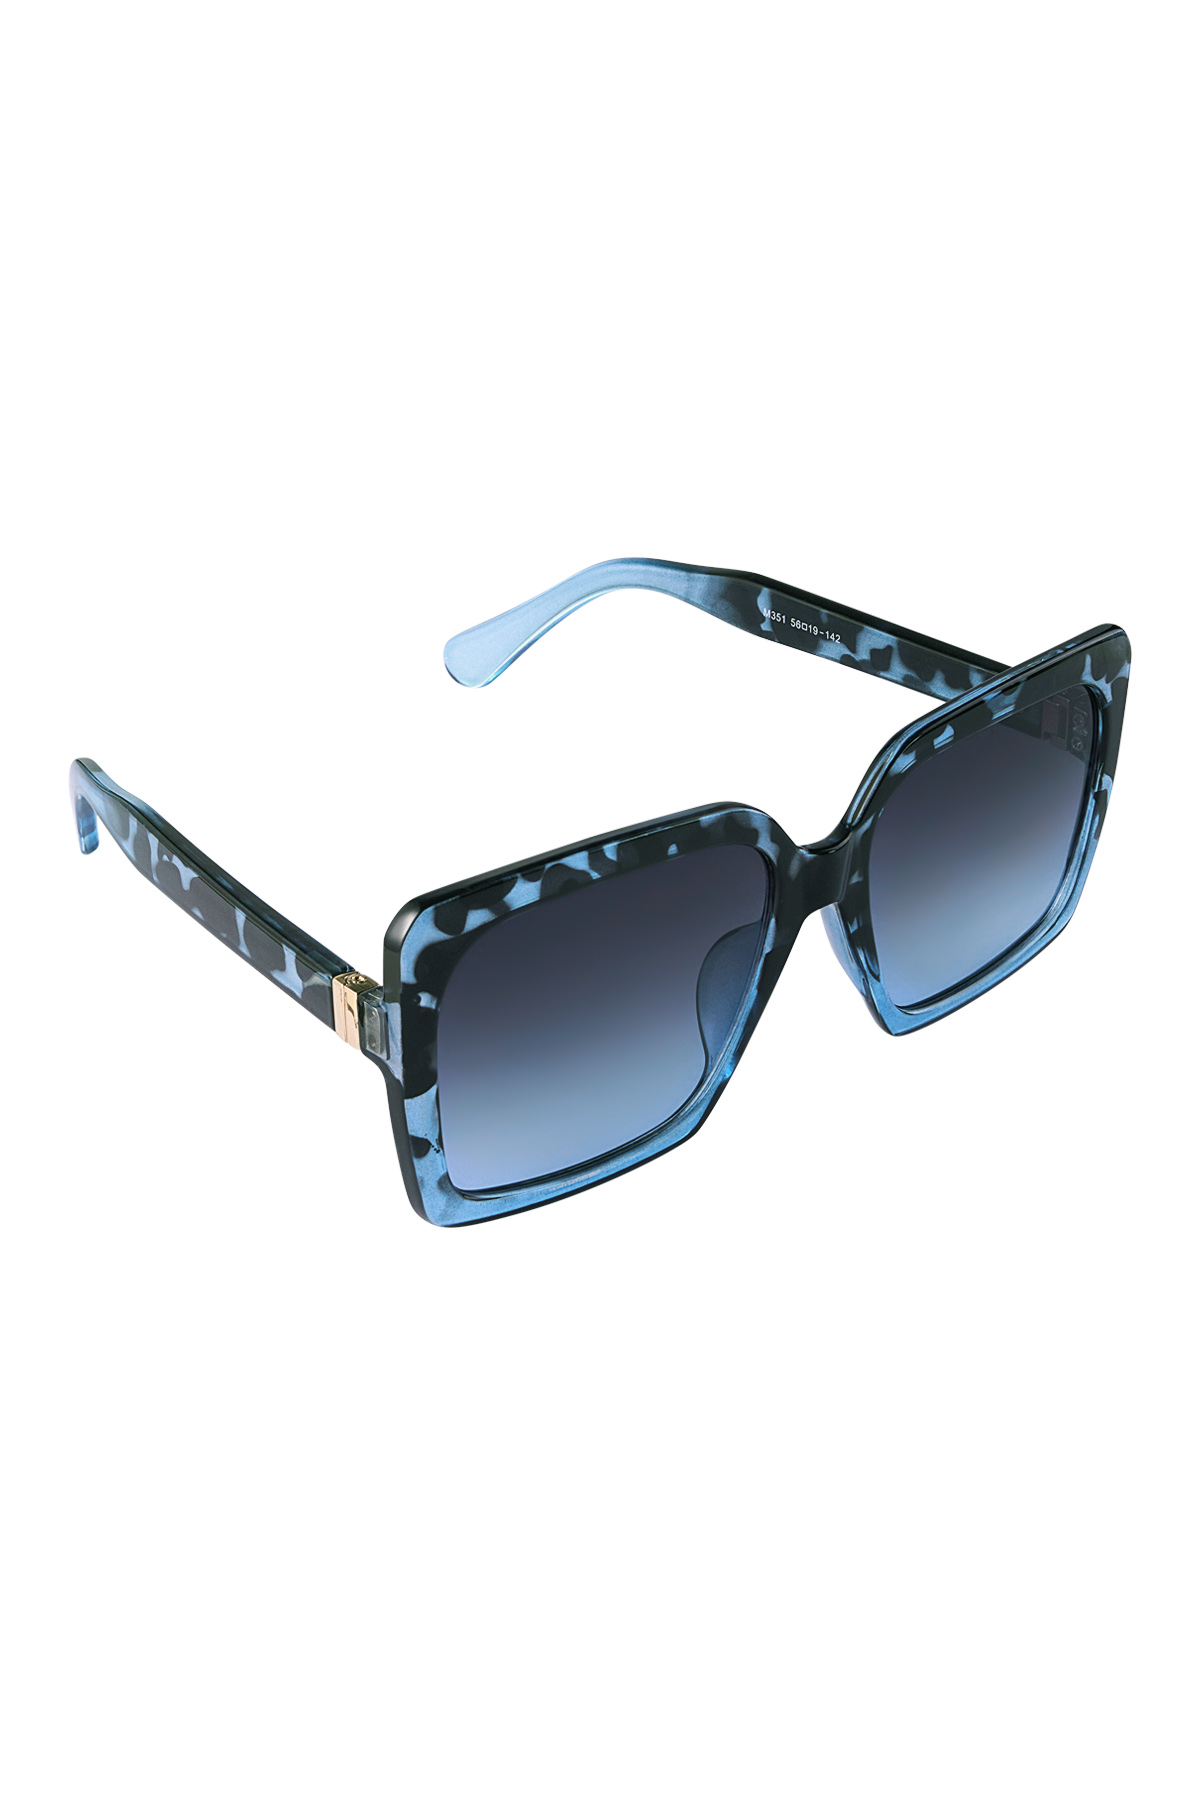 Sonnenbrille modern - blau